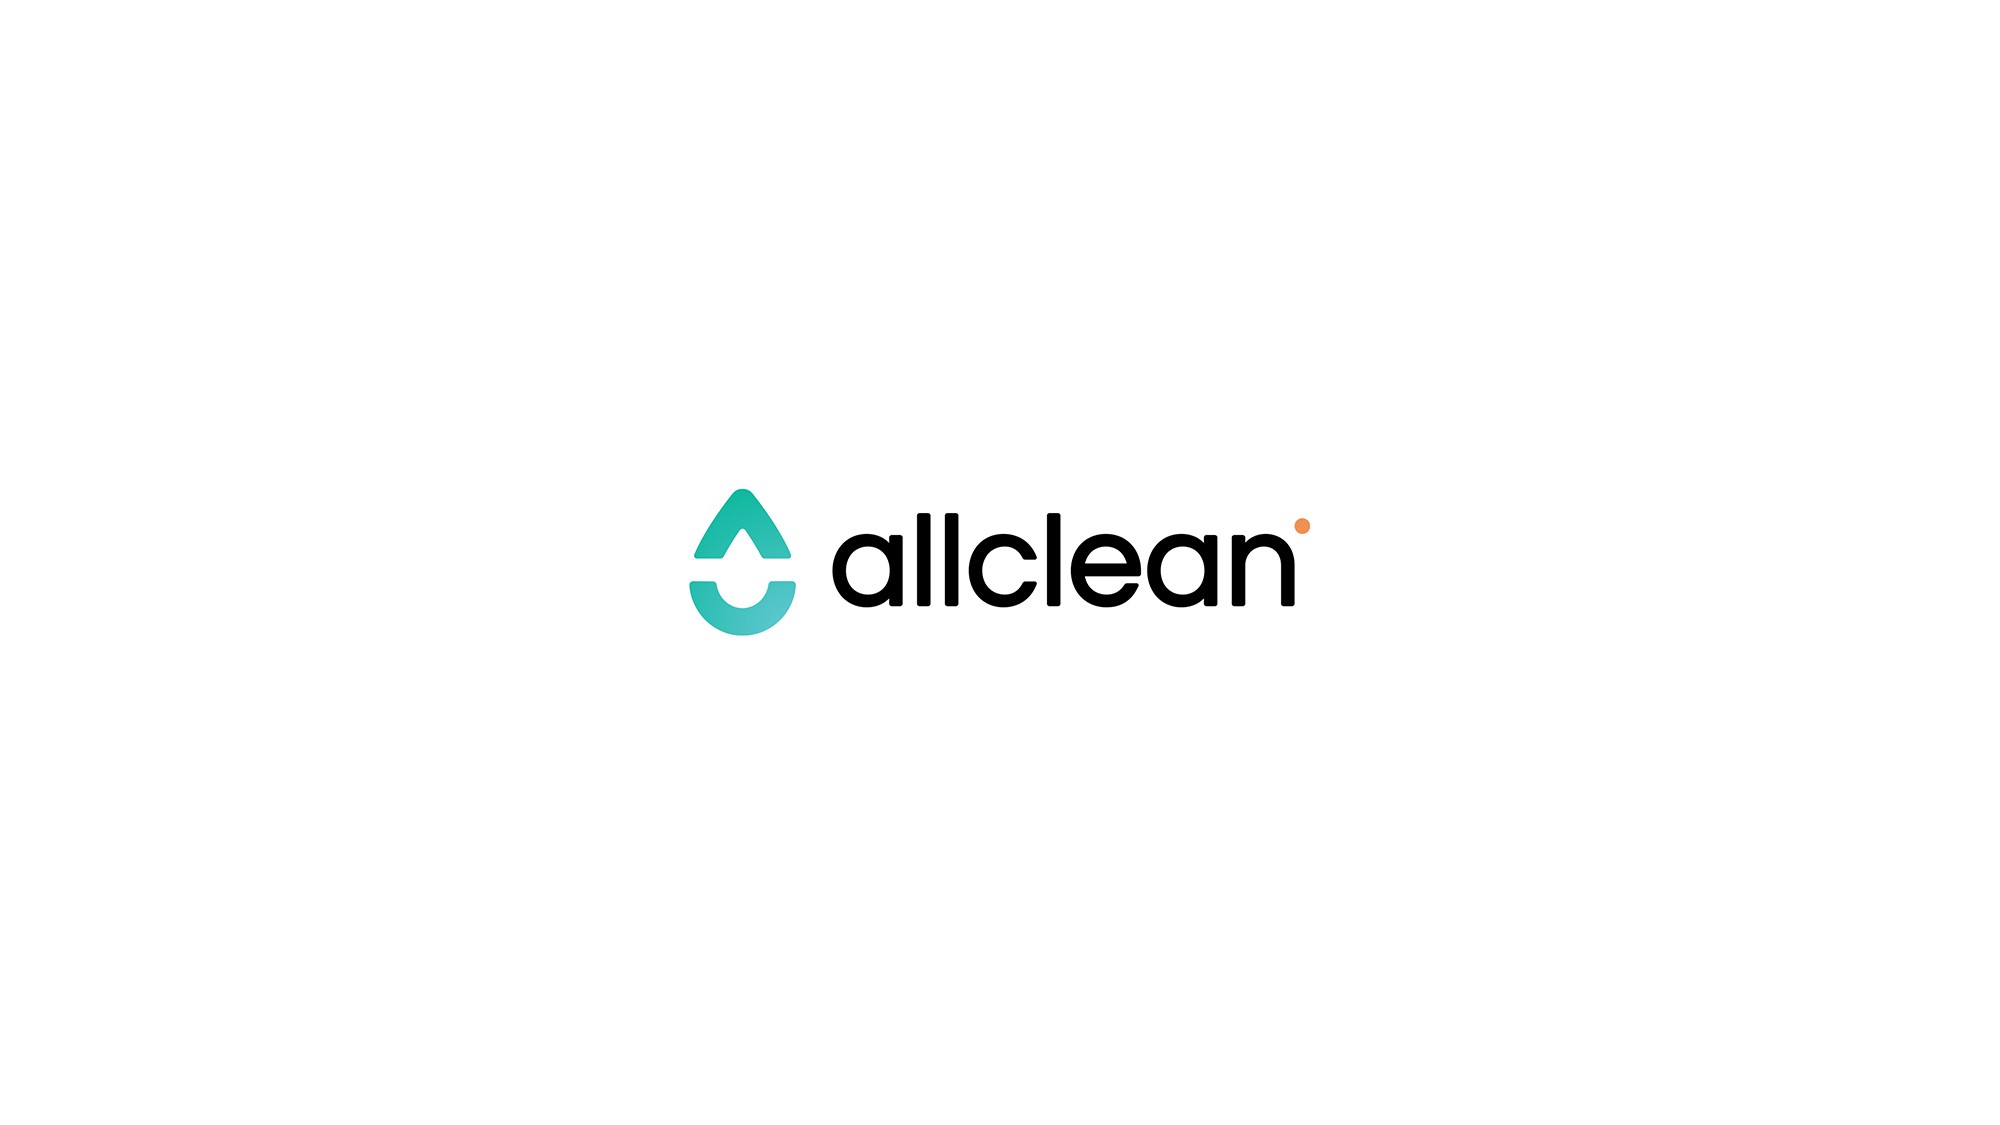 AllClean